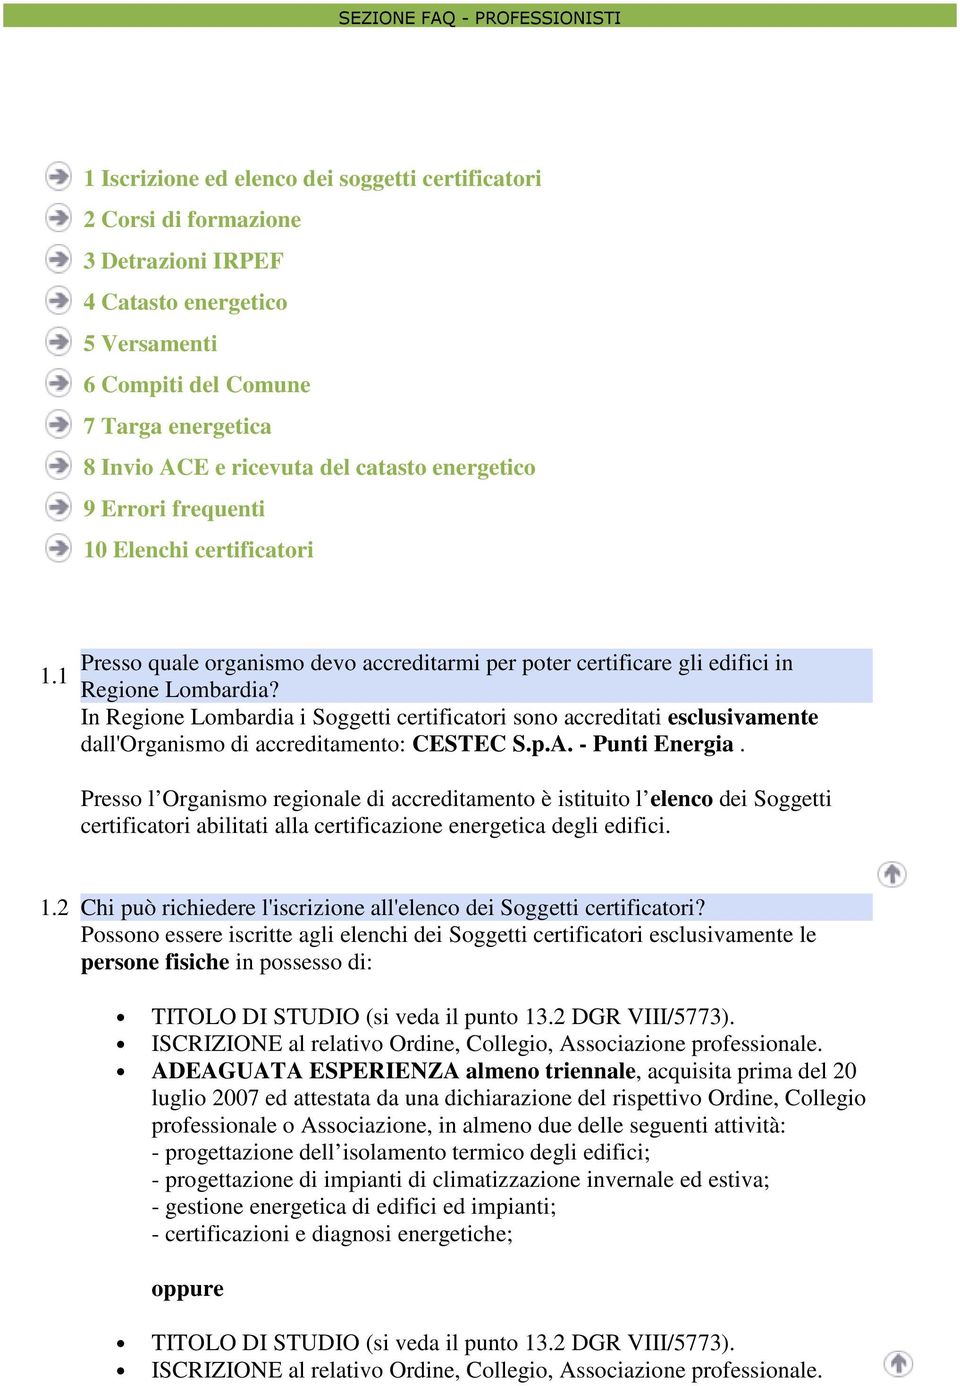 In Regione Lombardia i Soggetti certificatori sono accreditati esclusivamente dall'organismo di accreditamento: CESTEC S.p.A. - Punti Energia.